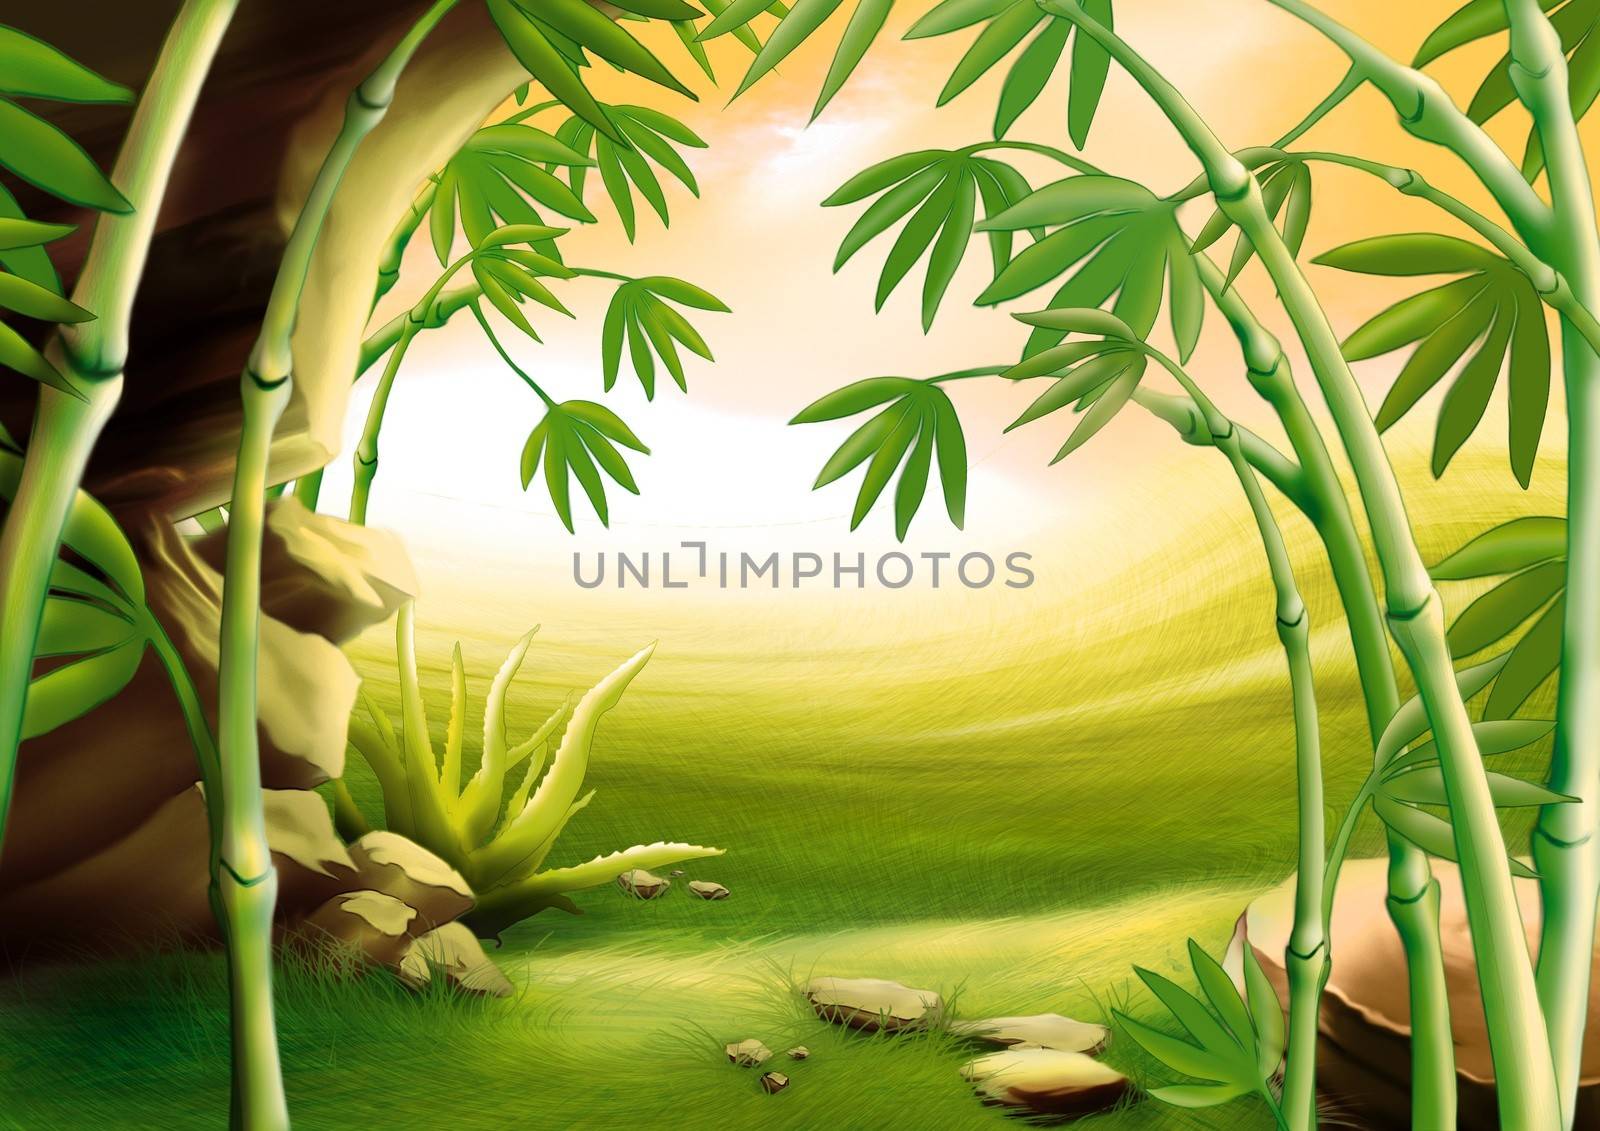 Bamboo - Background Illustration